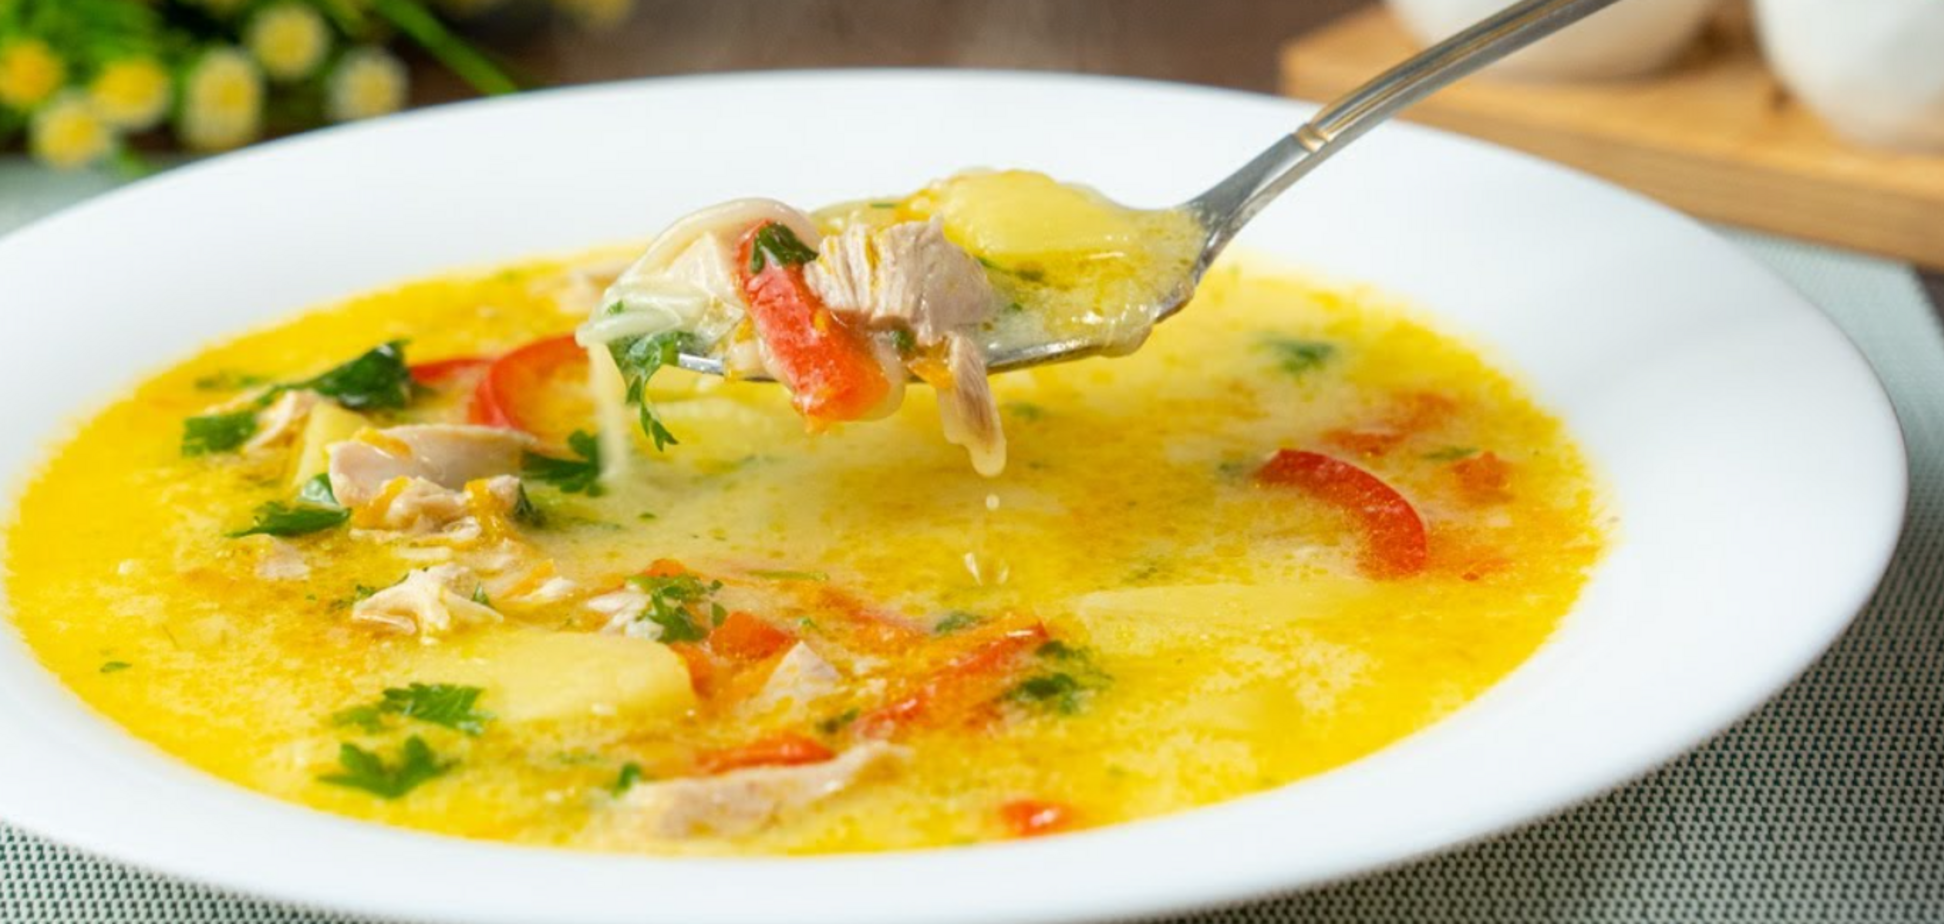 Як смачно приготувати сирний суп: ідеальна страва для ситного обіду